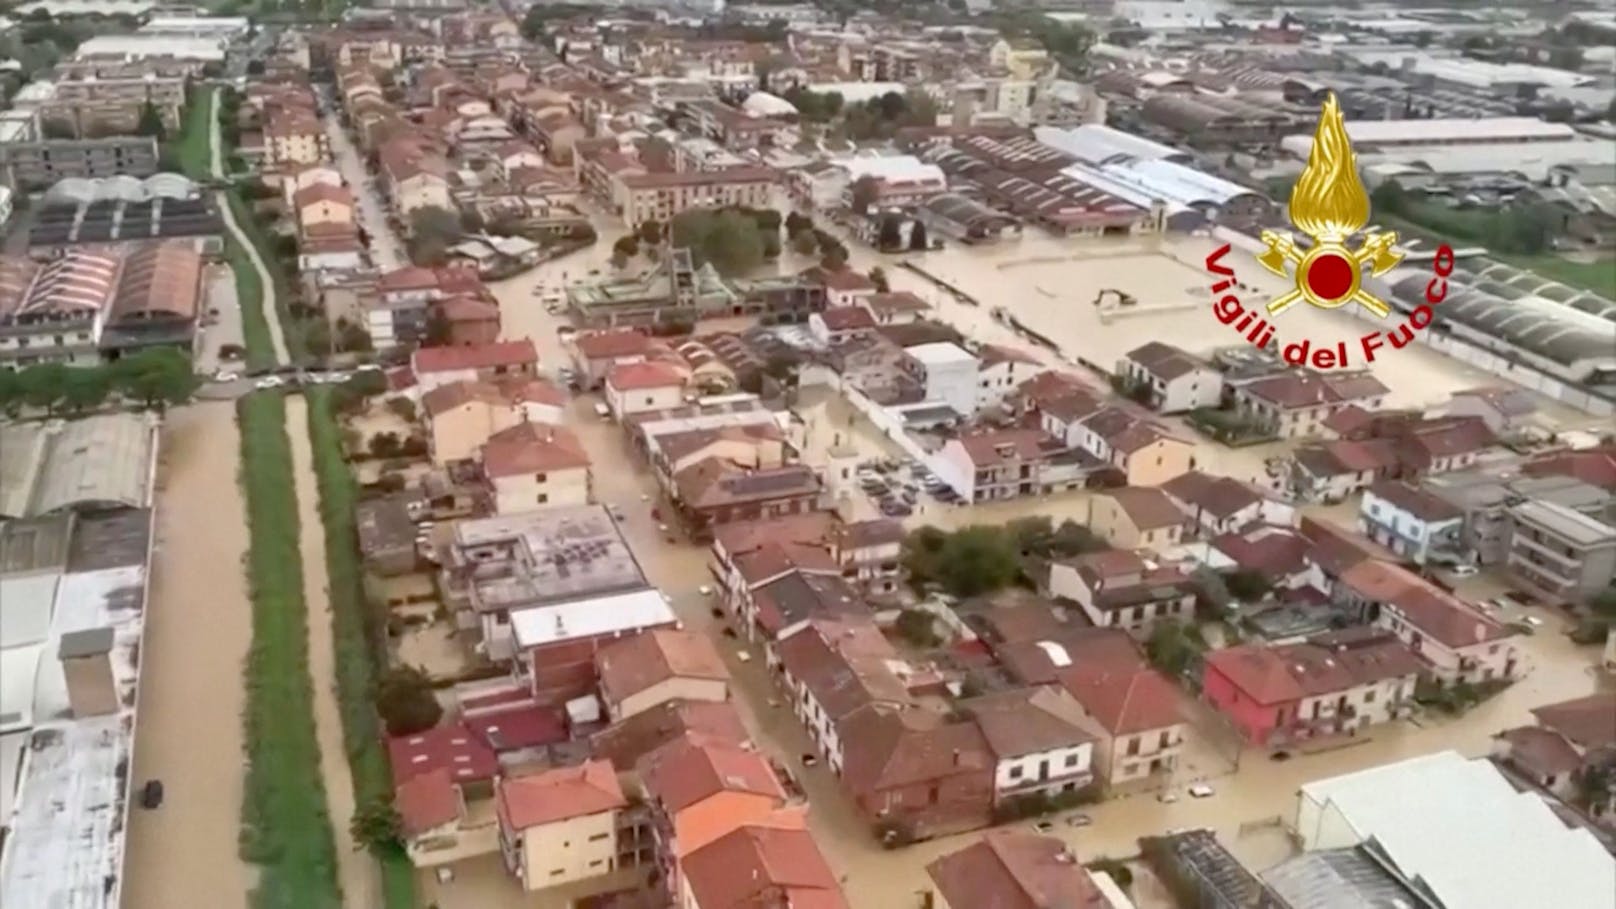 Orkan-Tief Ciarán hat am 2. und 3. November die Toskana verwüstet. Im Bild die Überschwemmungen in Prato aus der Luft aus gesehen.